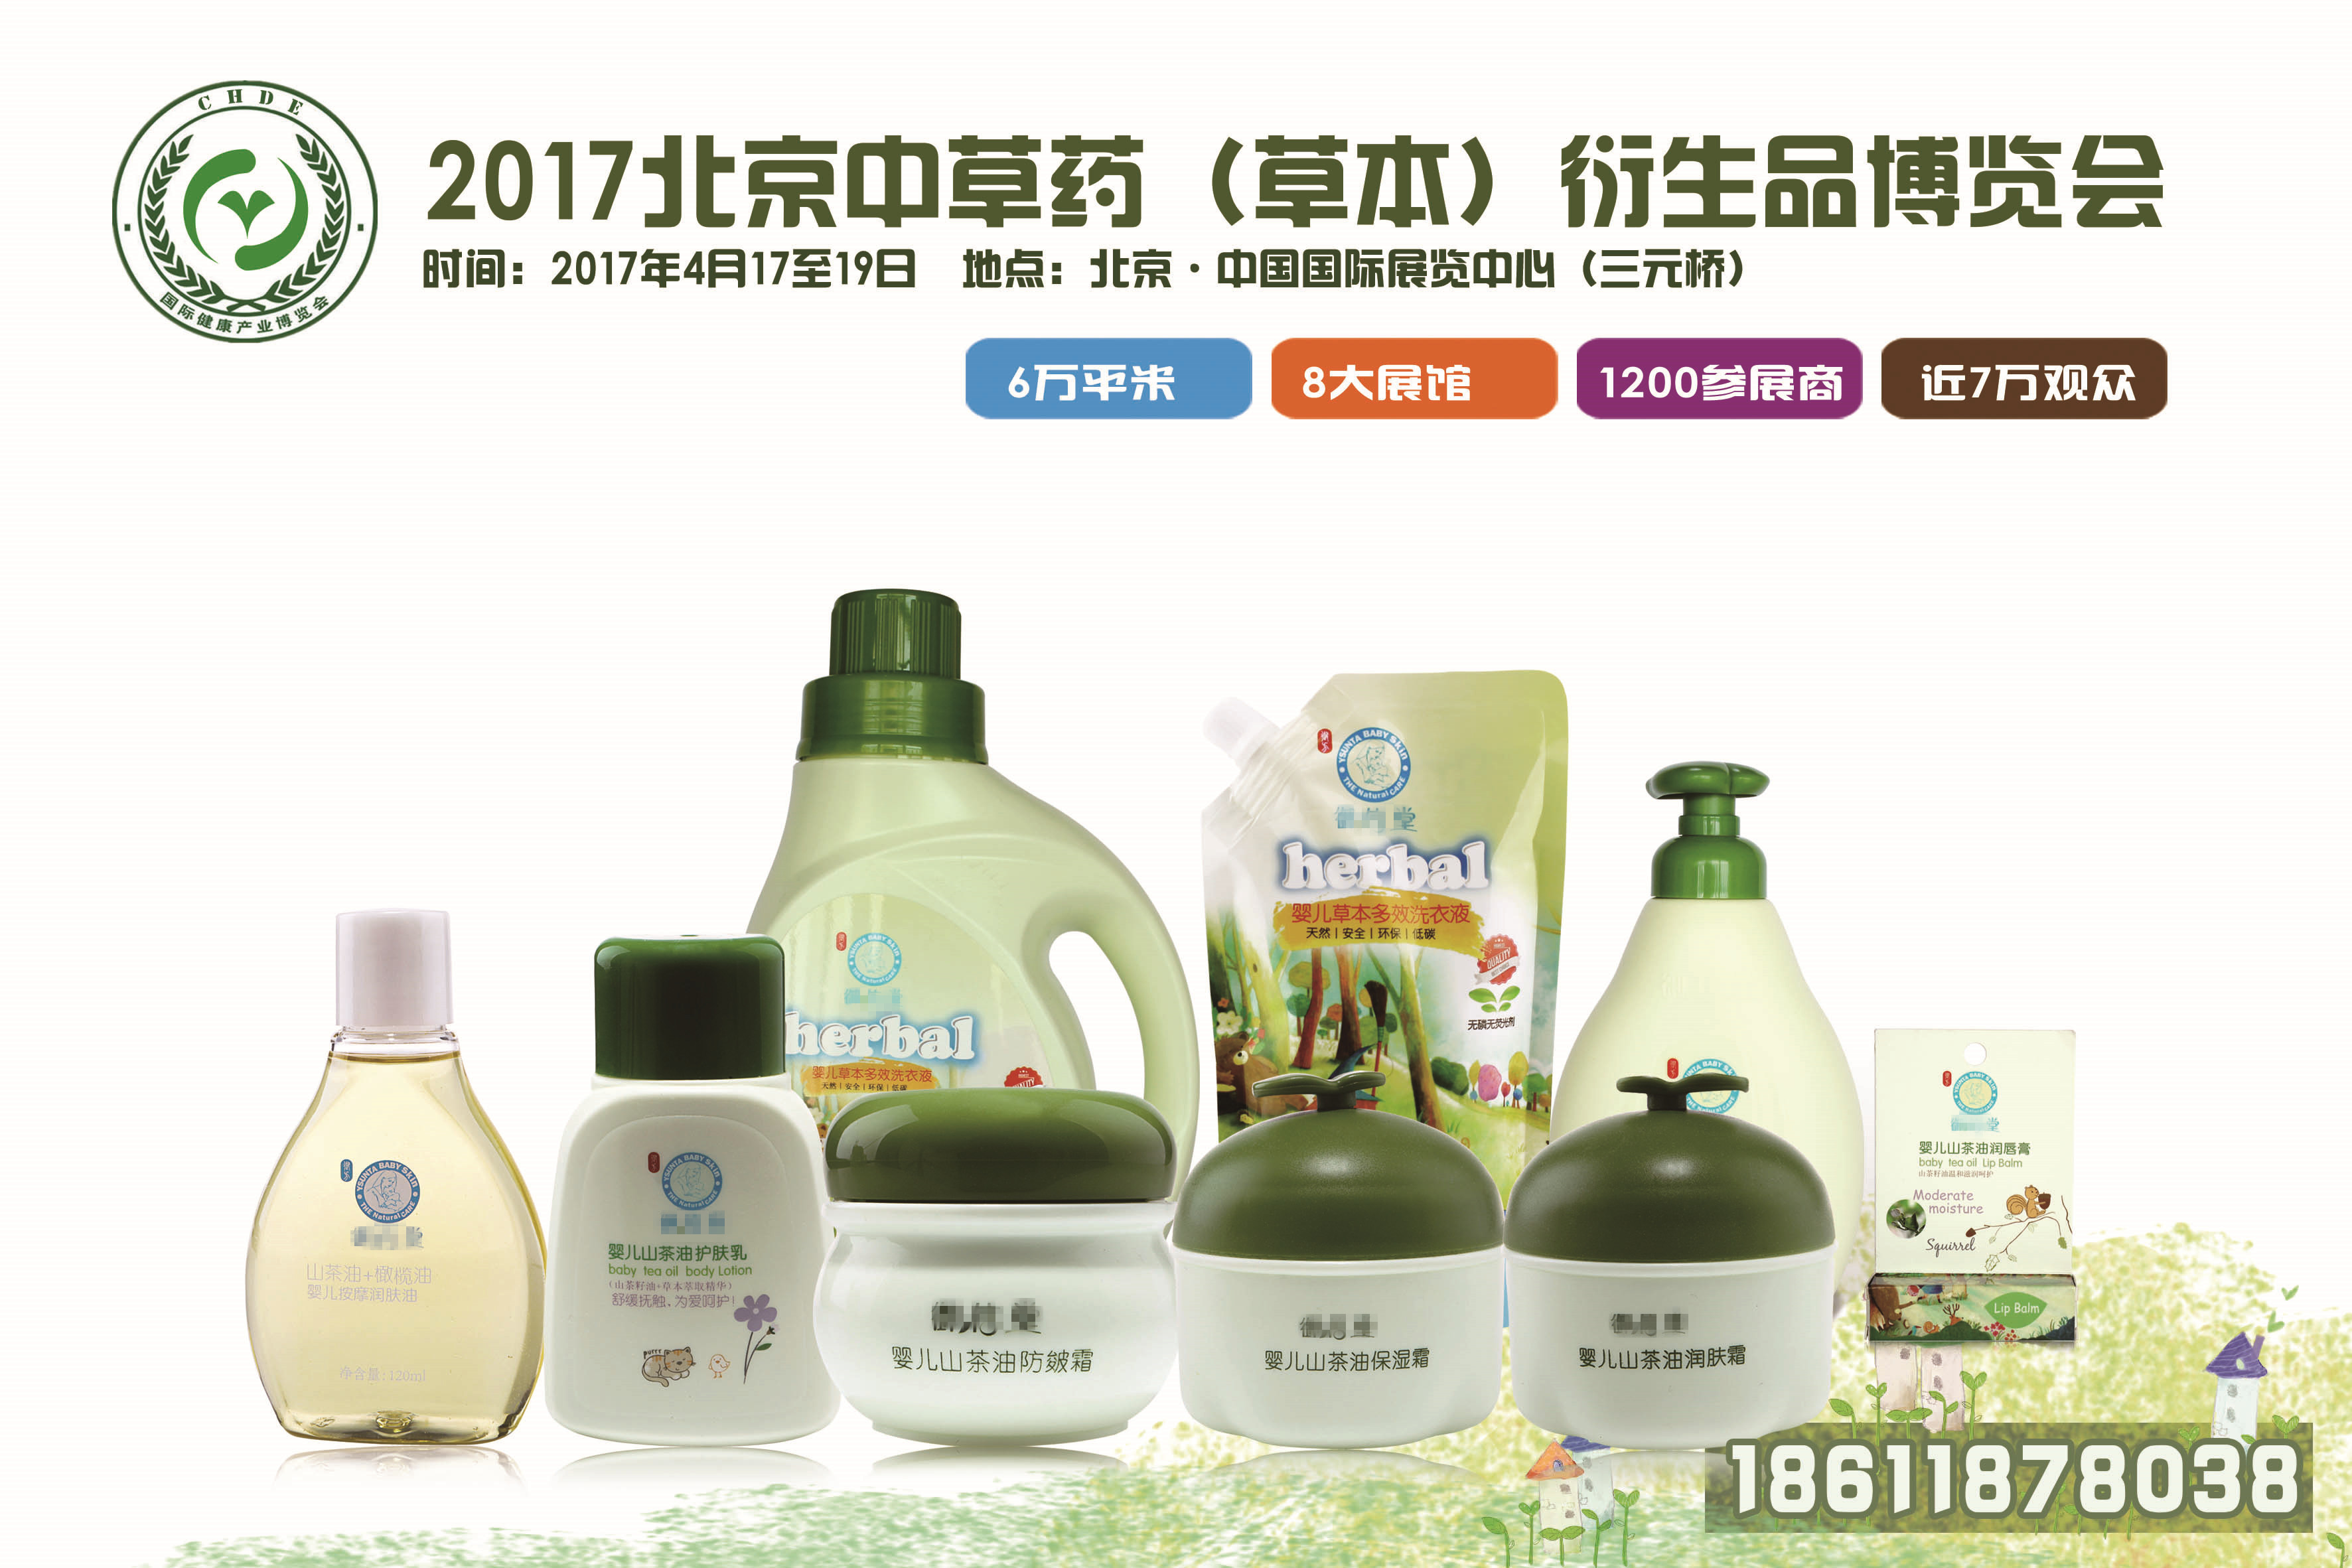 供应用于展览会的2017北京中草药衍生品展览会